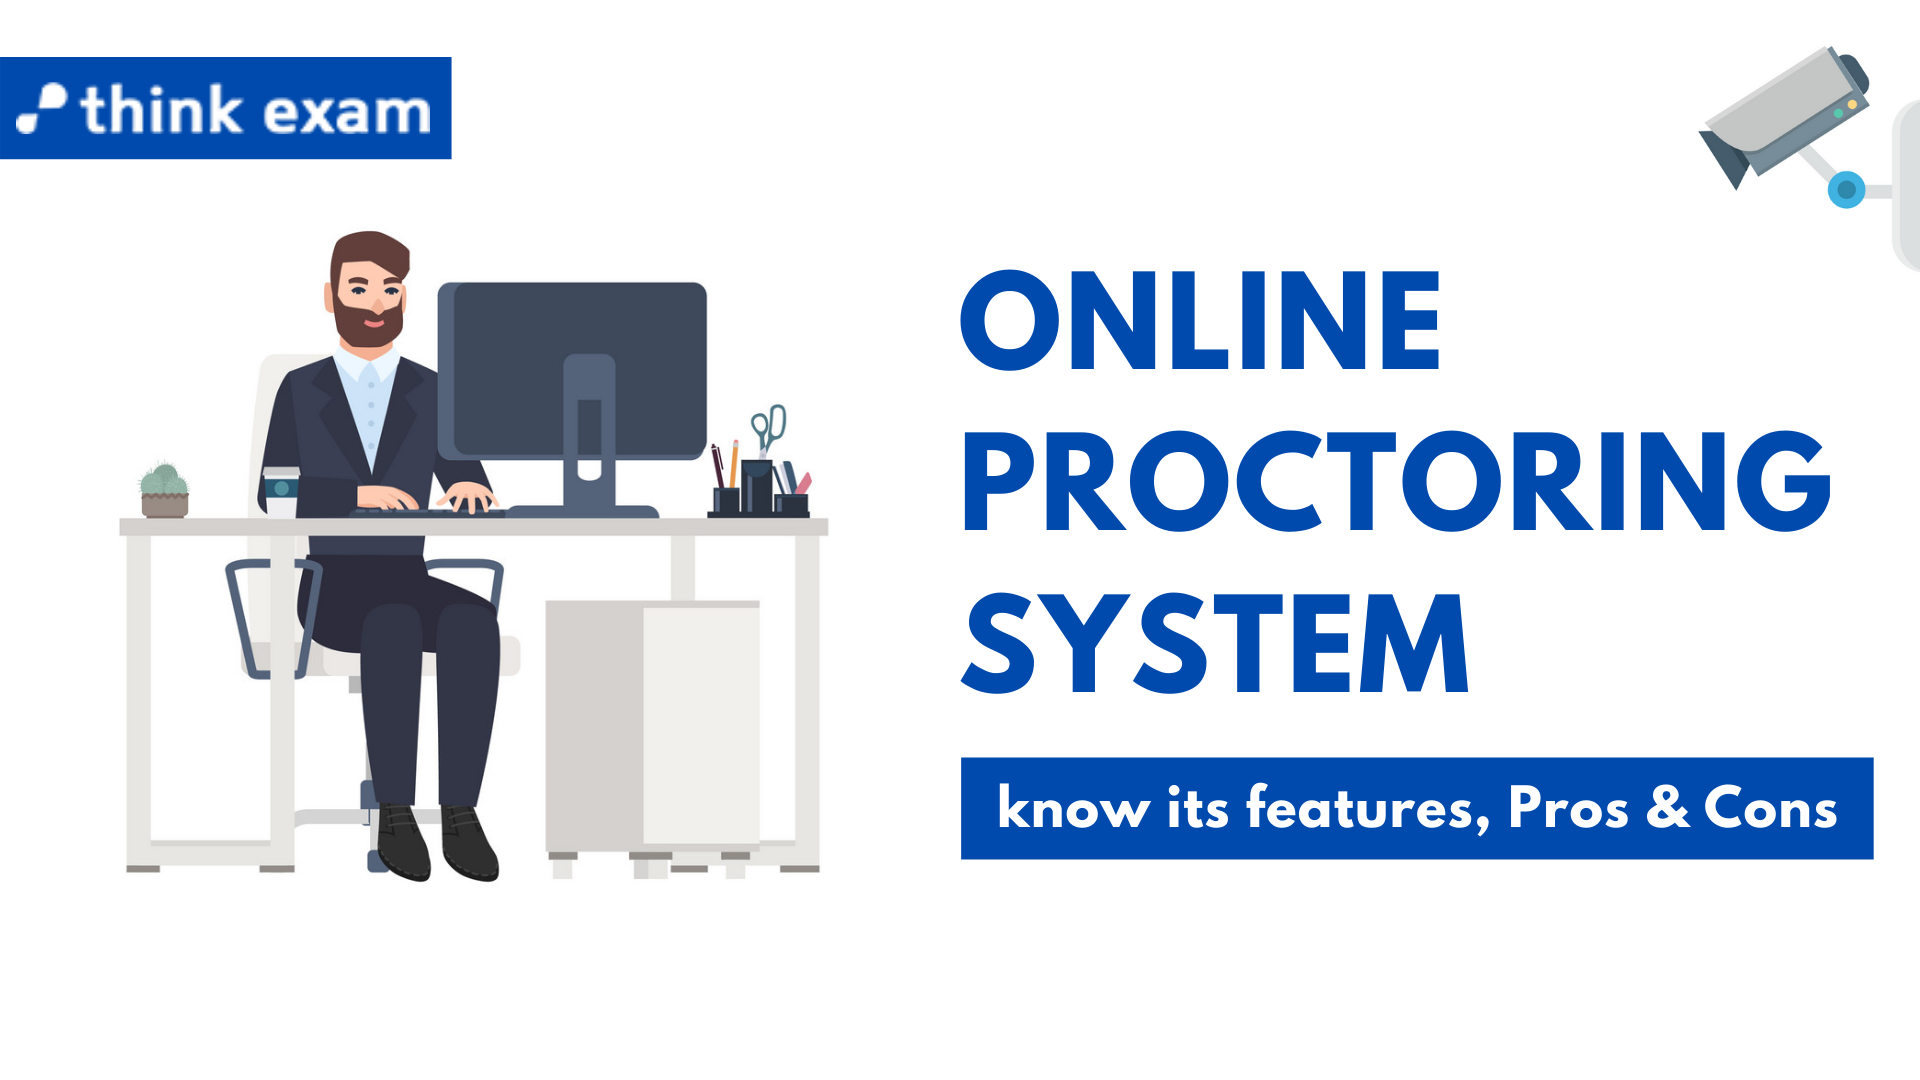 Online Proctoring System